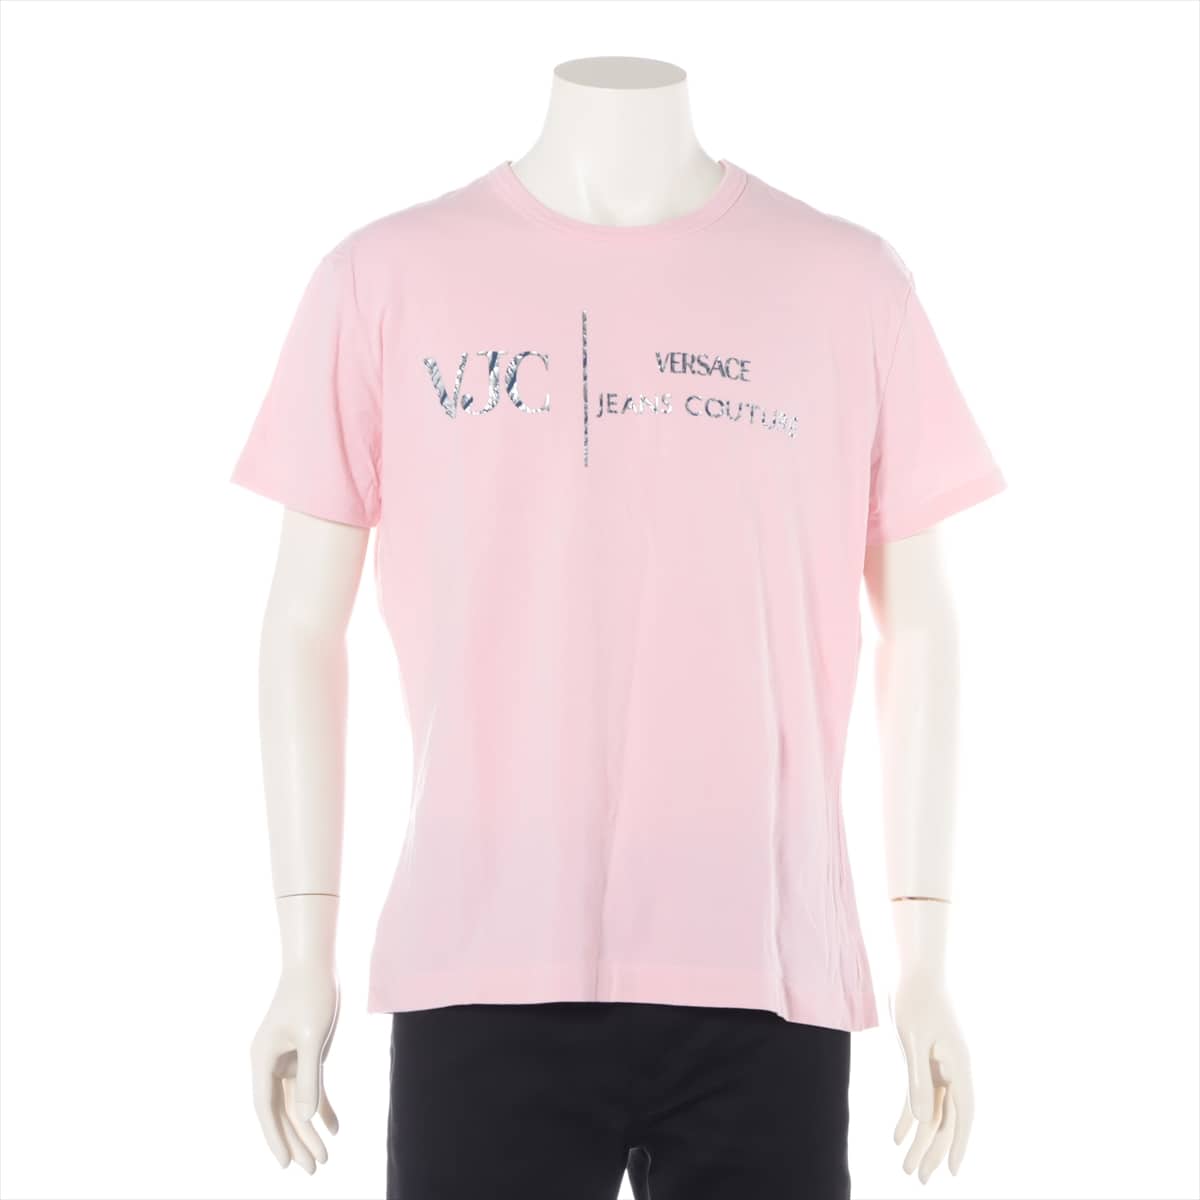 Versace Jeans Couture Cotton T-shirt XXXL Men's Pink